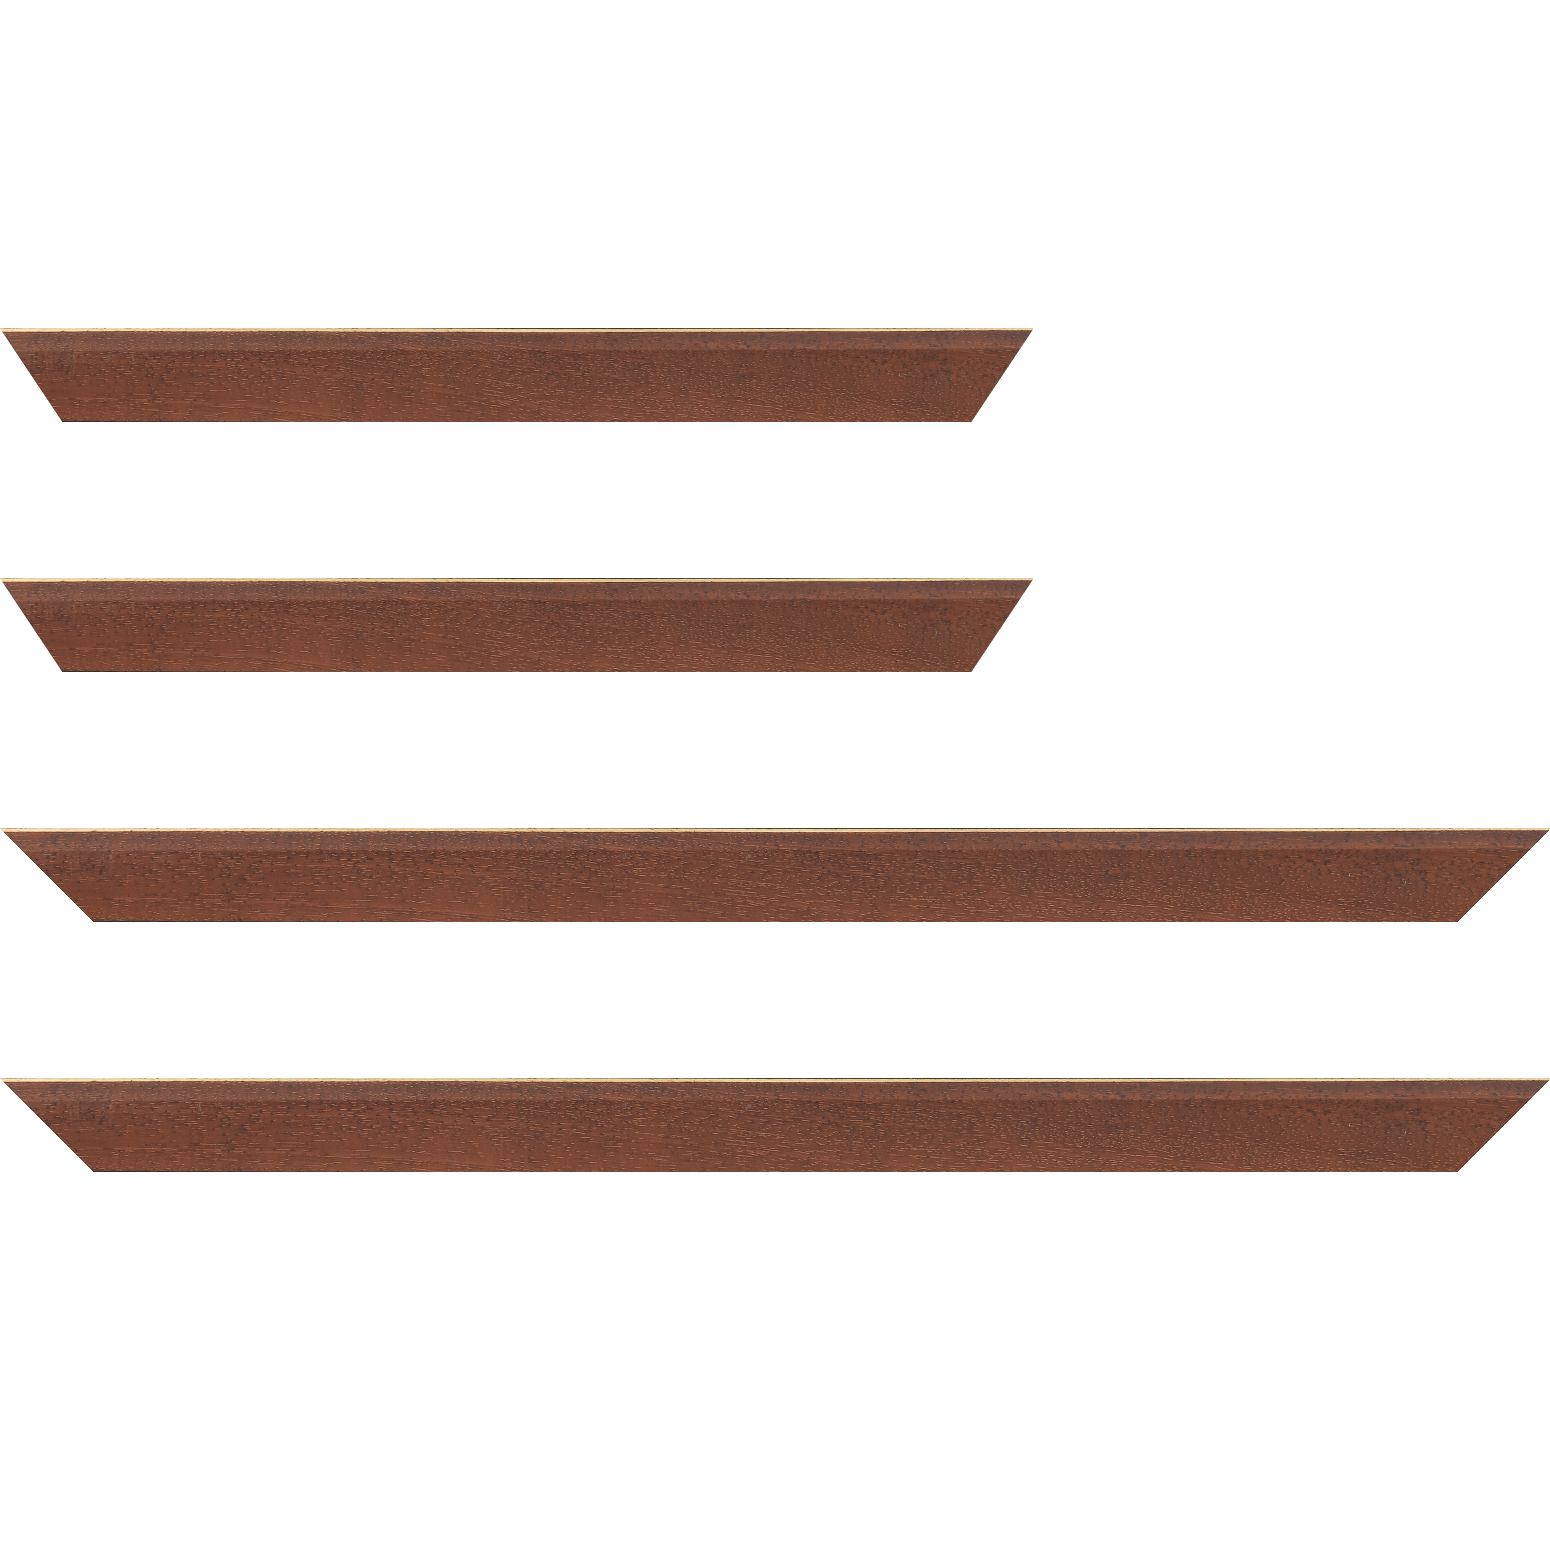 Baguette bois profil plat escalier largeur 3cm couleur marron miel satiné filet créme extérieur - 35x24